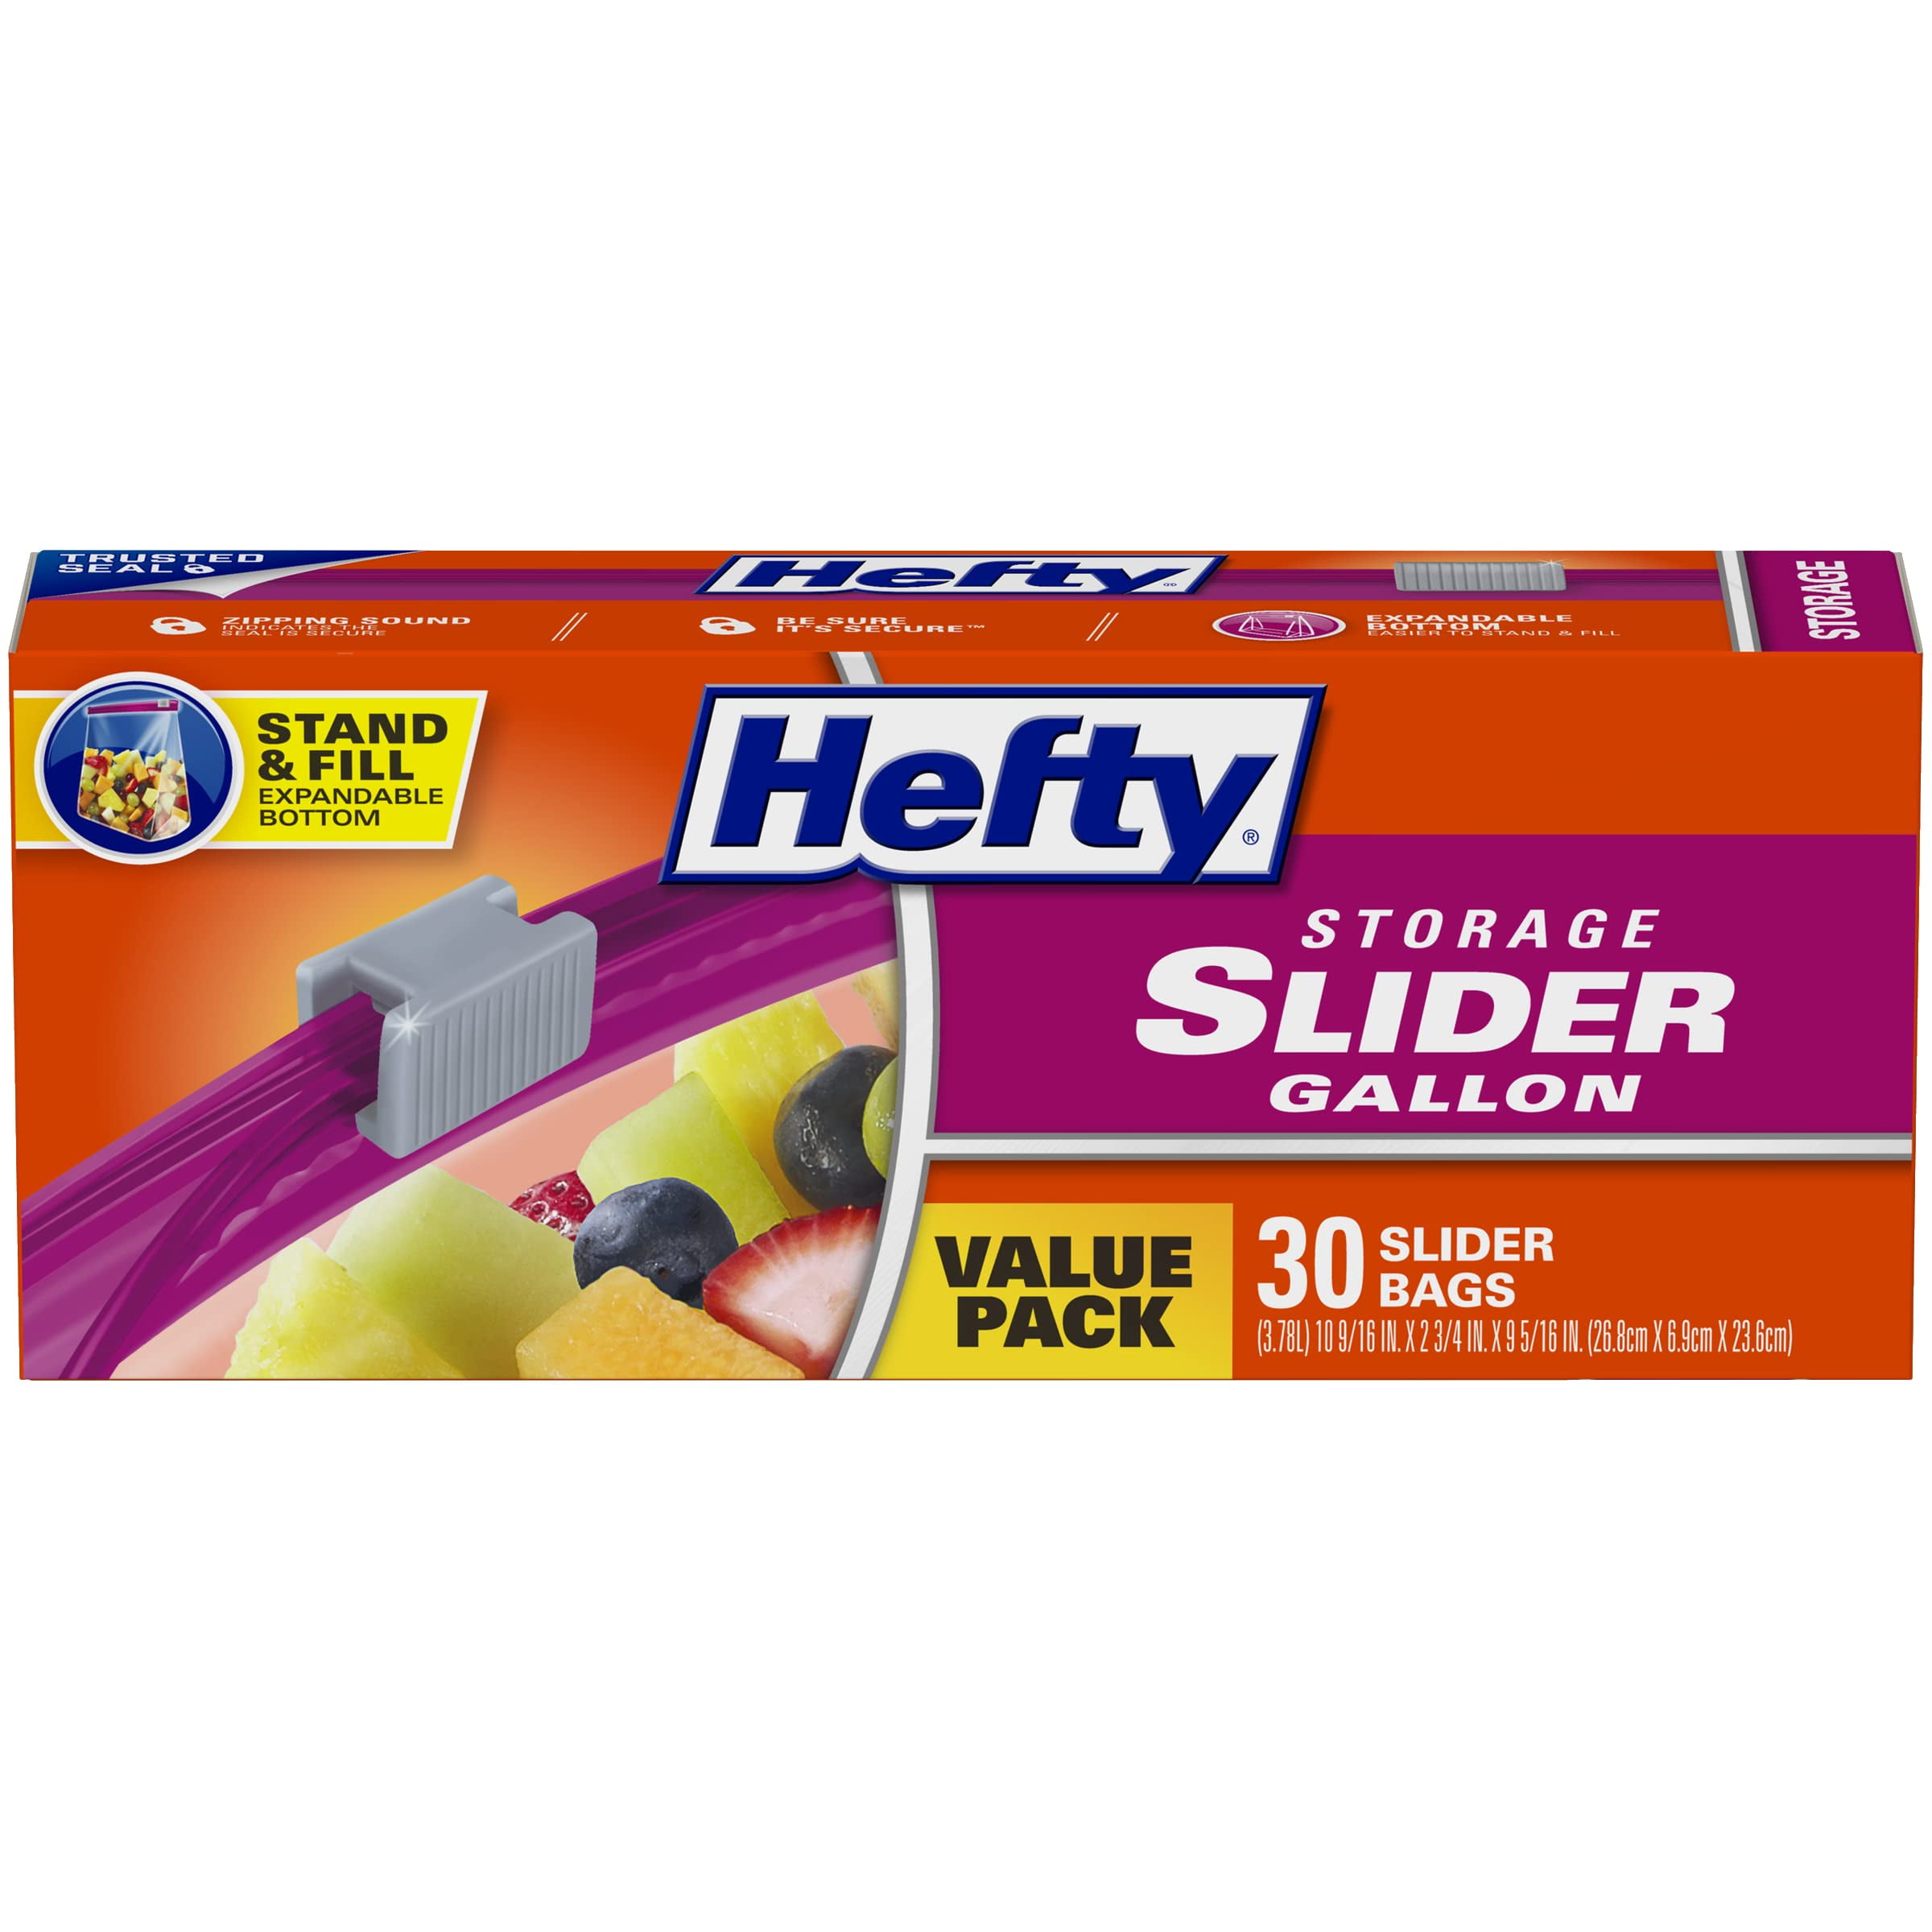 Hefty Slider Storage Bags Just $1.99 At Kroger - iHeartKroger